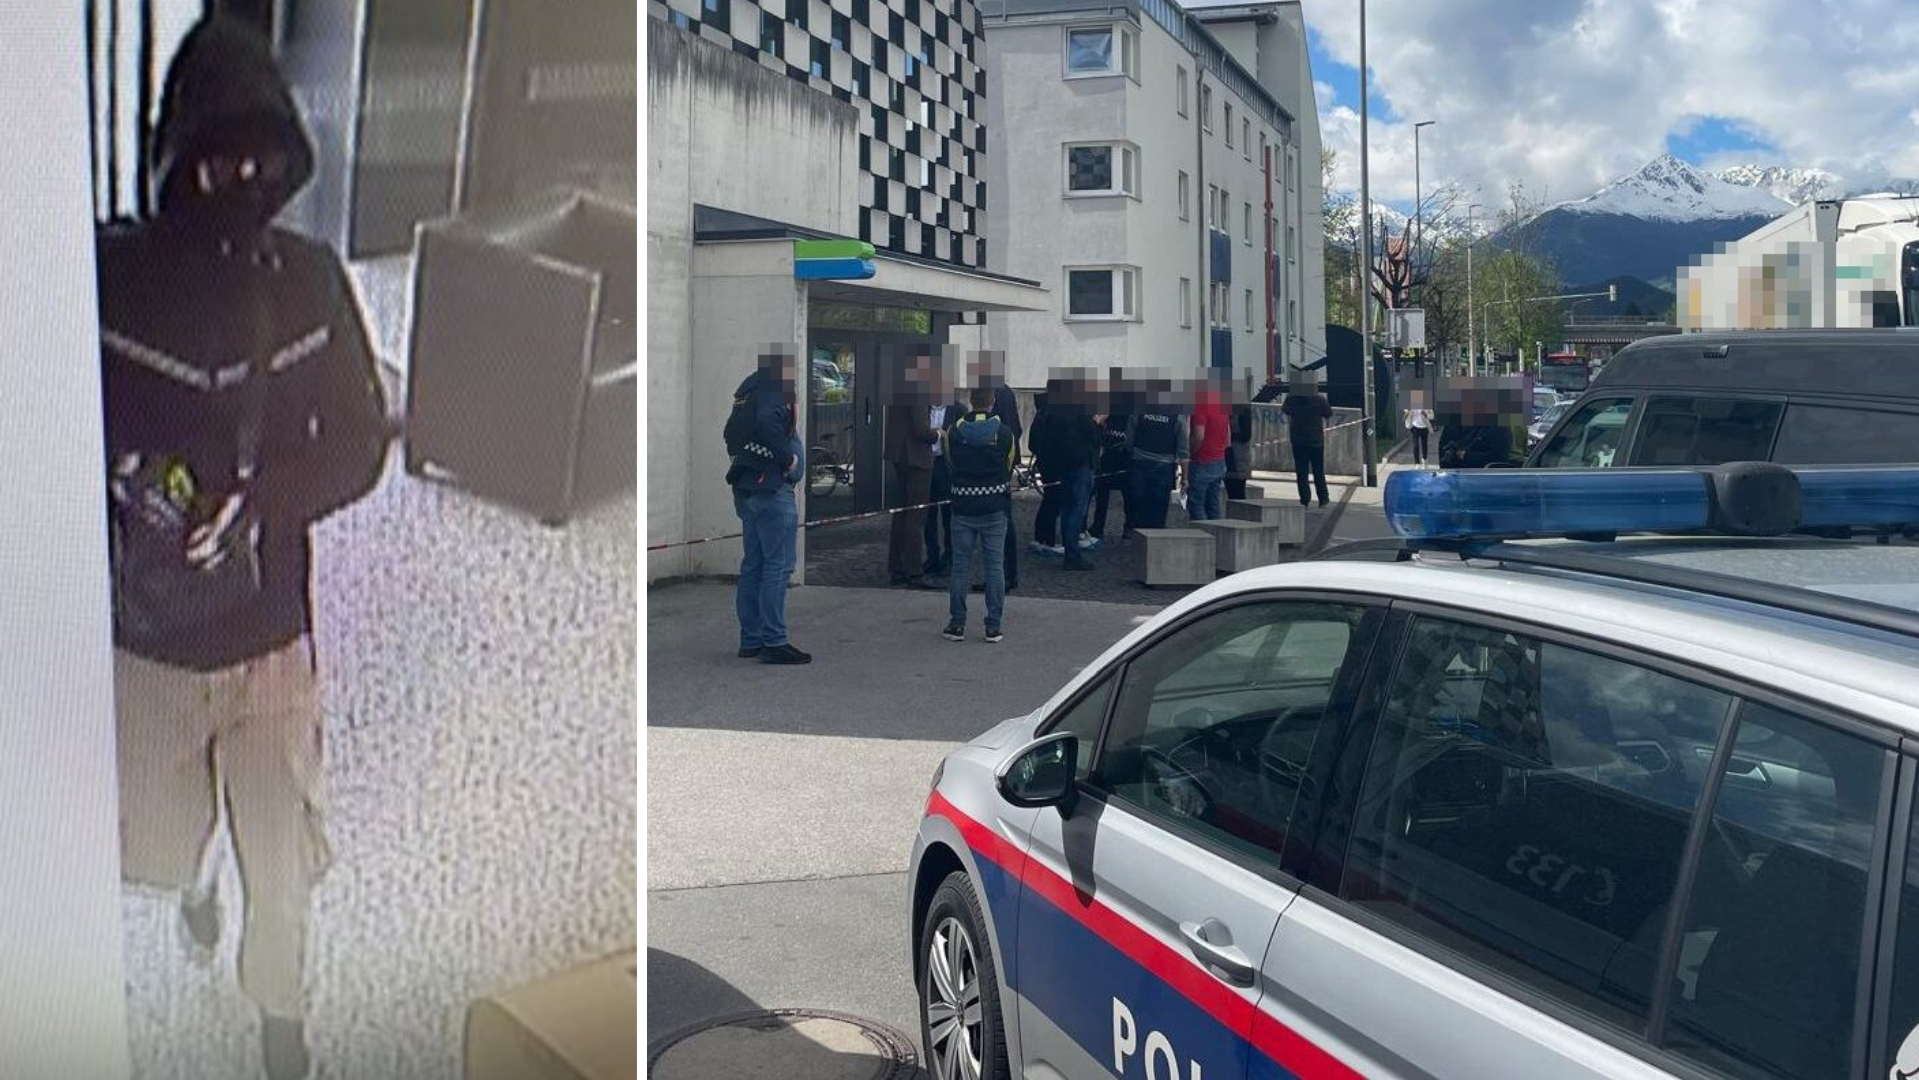 Salı sabahı geç saatlerde Innsbruck'taki Mitterweg'de bulunan BTV şubesi kimliği belirsiz bir kişi tarafından soyuldu. (Bild: Polizei, Markus Gassler)